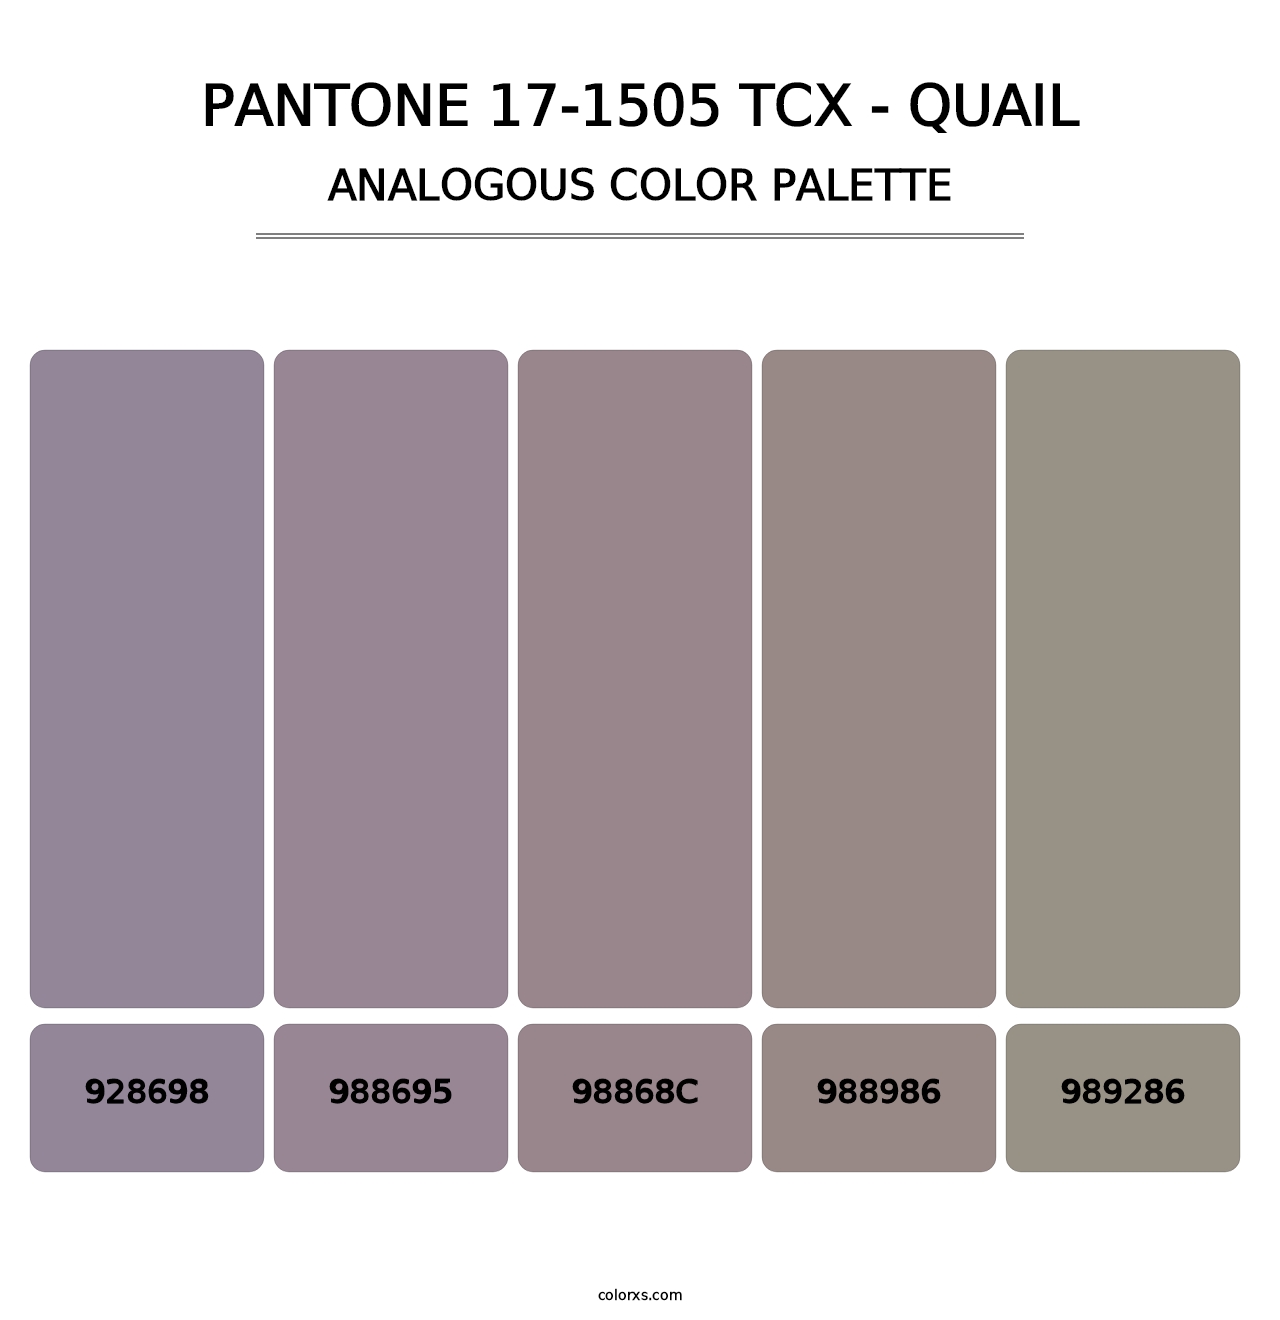 PANTONE 17-1505 TCX - Quail - Analogous Color Palette